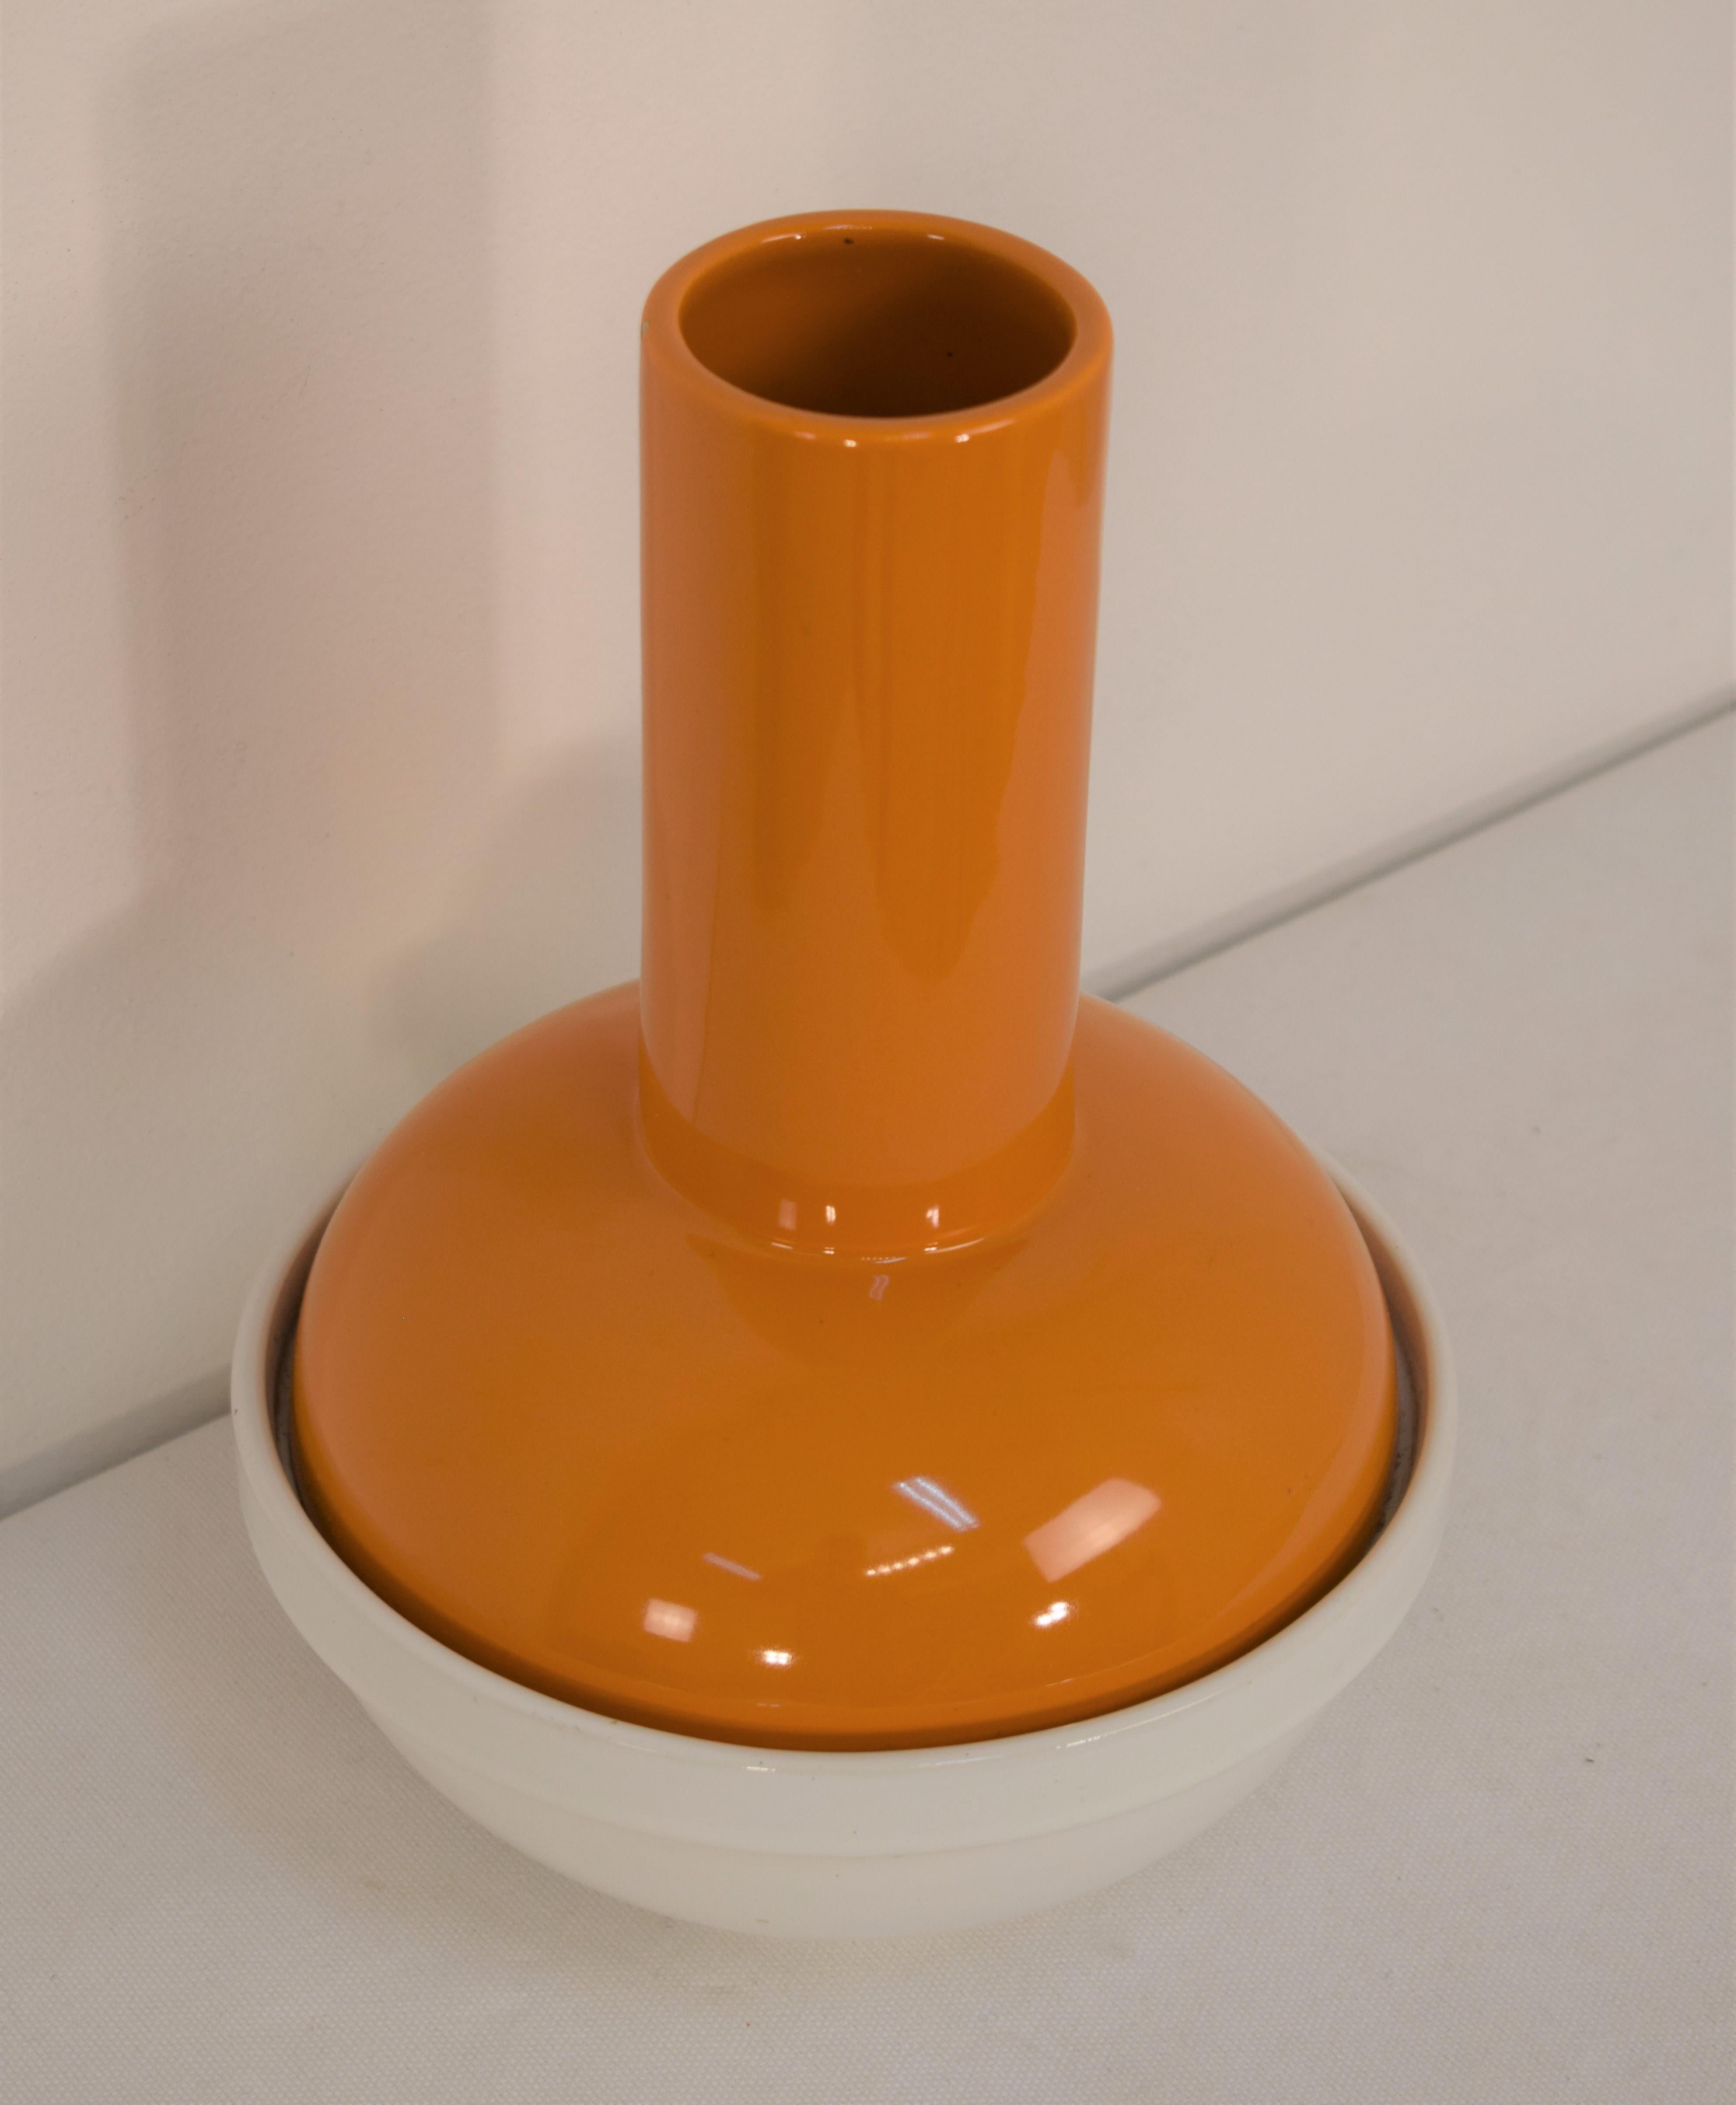 Italian ceramic vase, 1960s.
Dimensions: H= 27 cm; D= 19 cm.